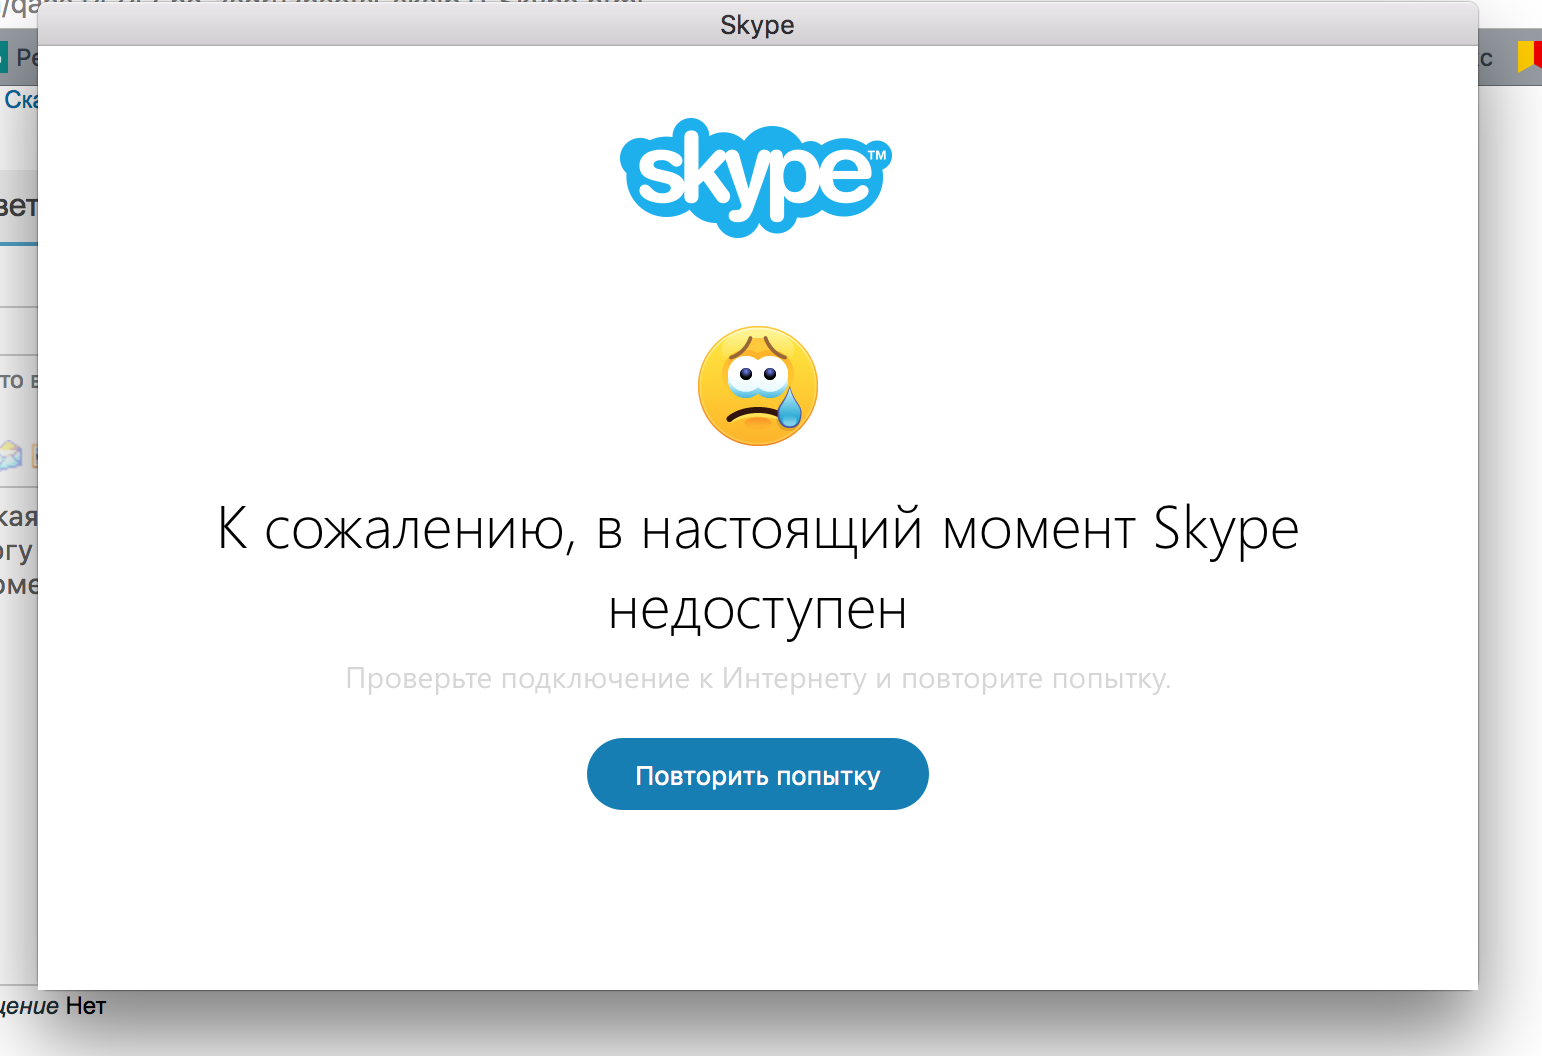 Почему не входит интернет. Ошибка скайп. Ошибка скайп на телефоне. Ошибка при запуске скайпа. Проблемы со скайпом.